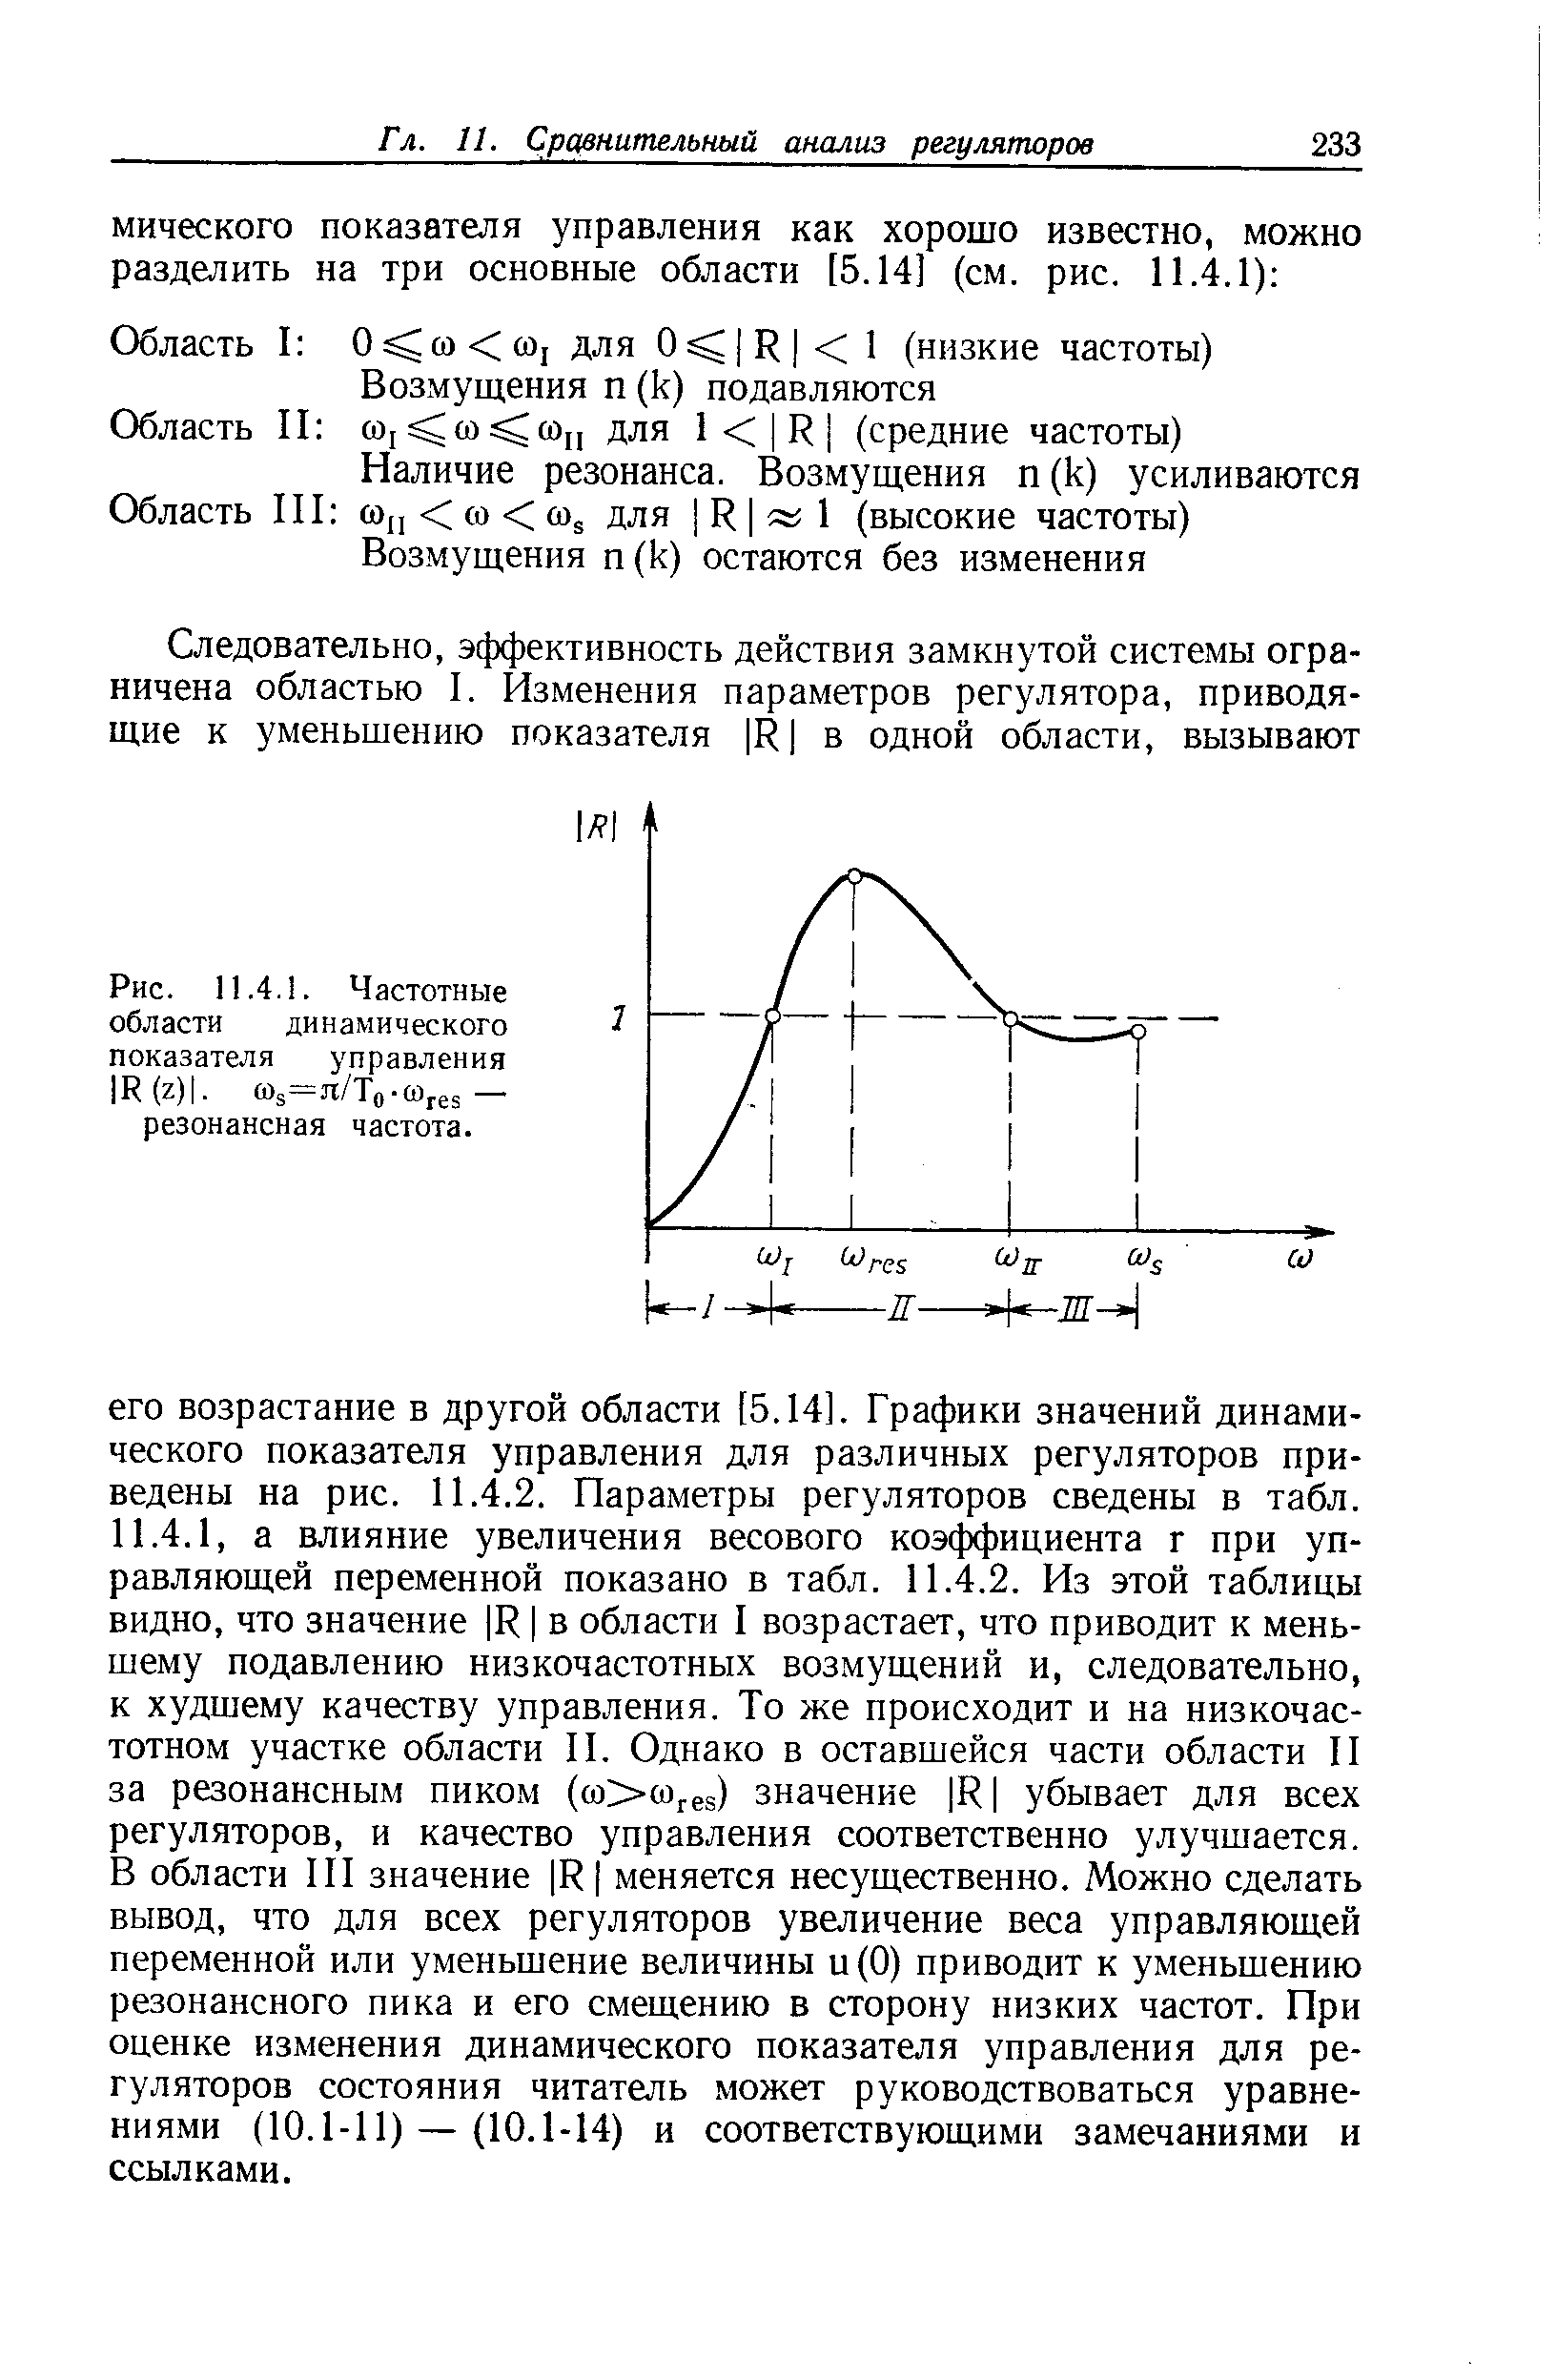 Рис. П.4.1. Частотные области динамического показателя управления 1К(г)1. сйз=я/То-Юге5— резонансная частота.
